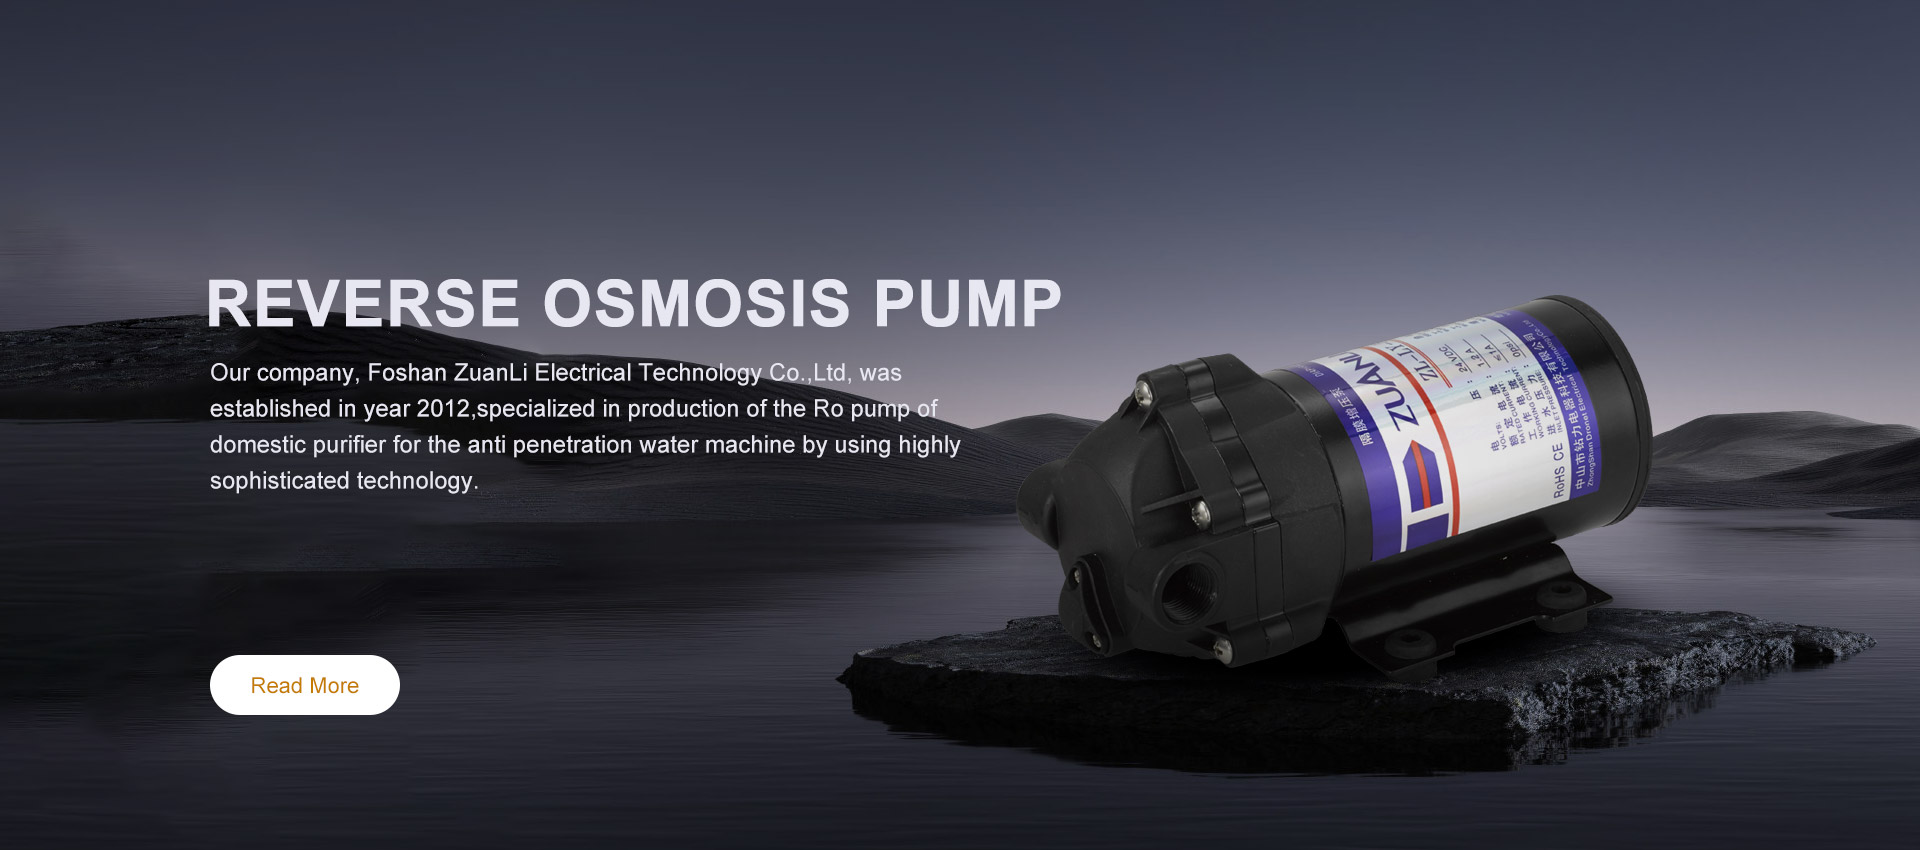 Kinas tillverkare av pump för omvänd osmos